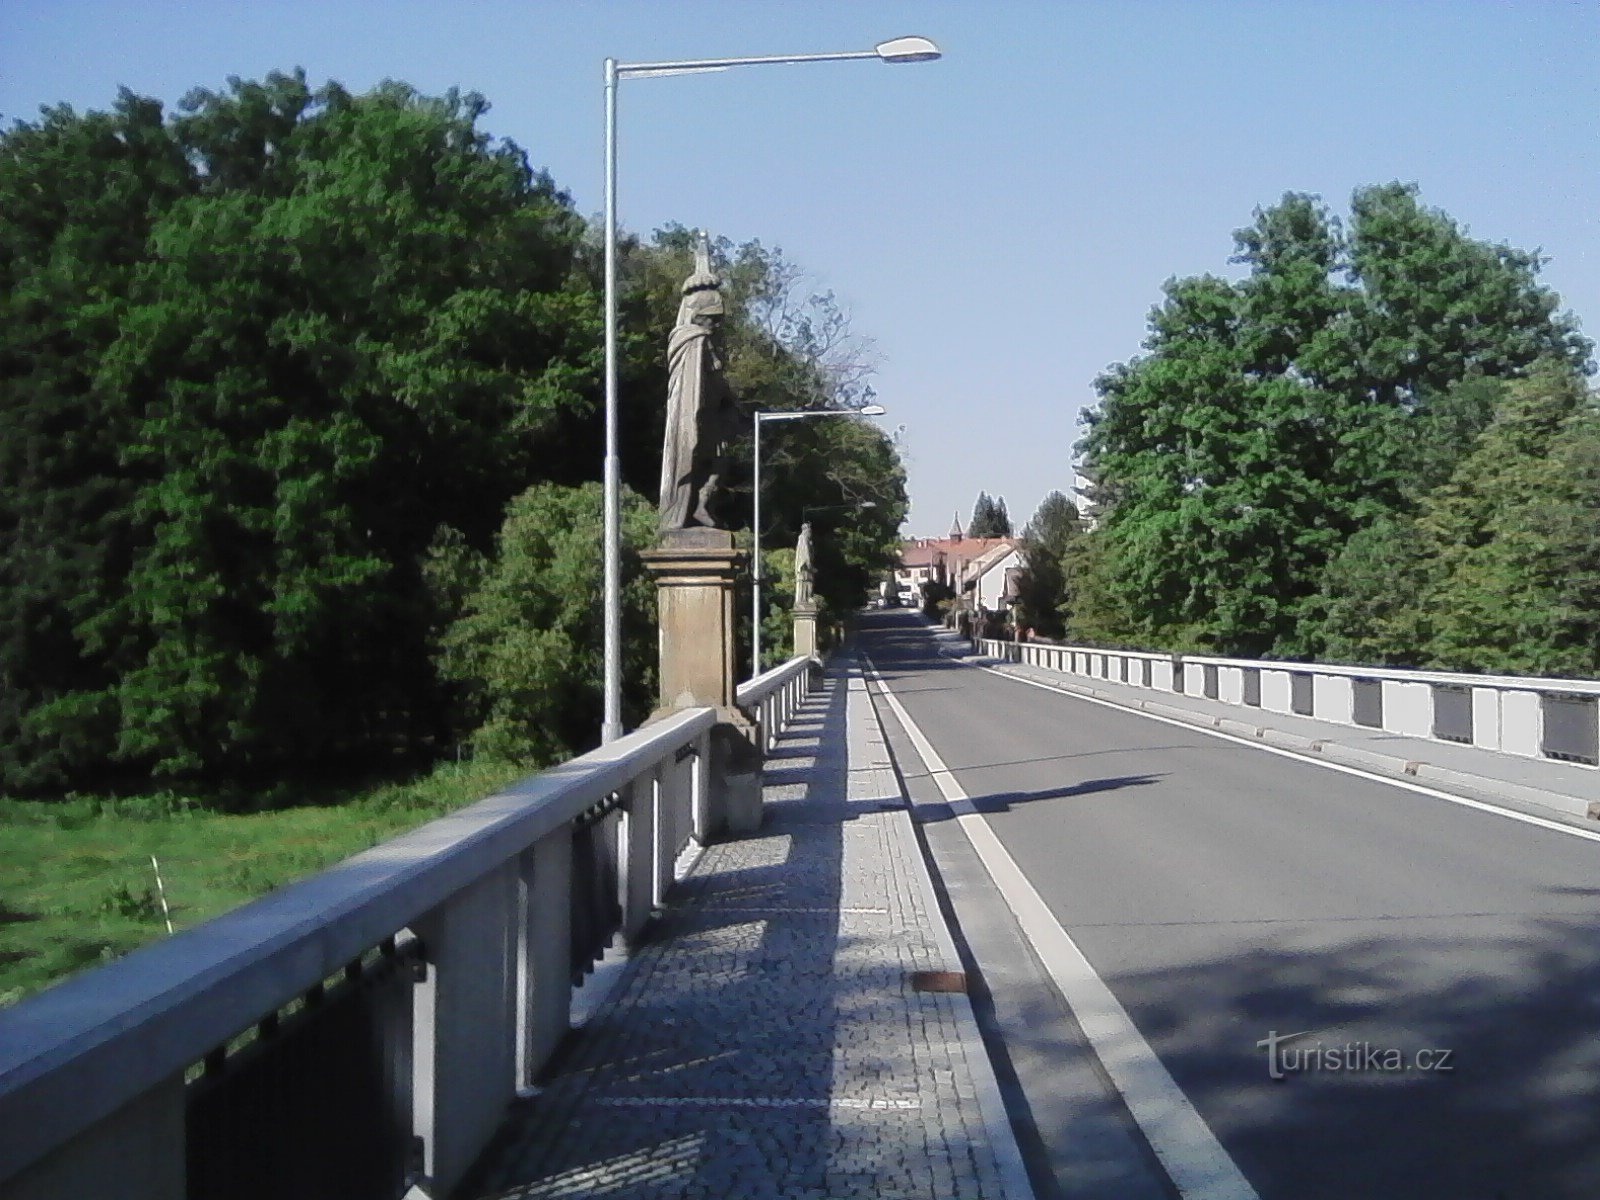 1. Il ponte dell'impero di Karel Burka da Sedlce a Prčice con le statue di S. Floriano e S.